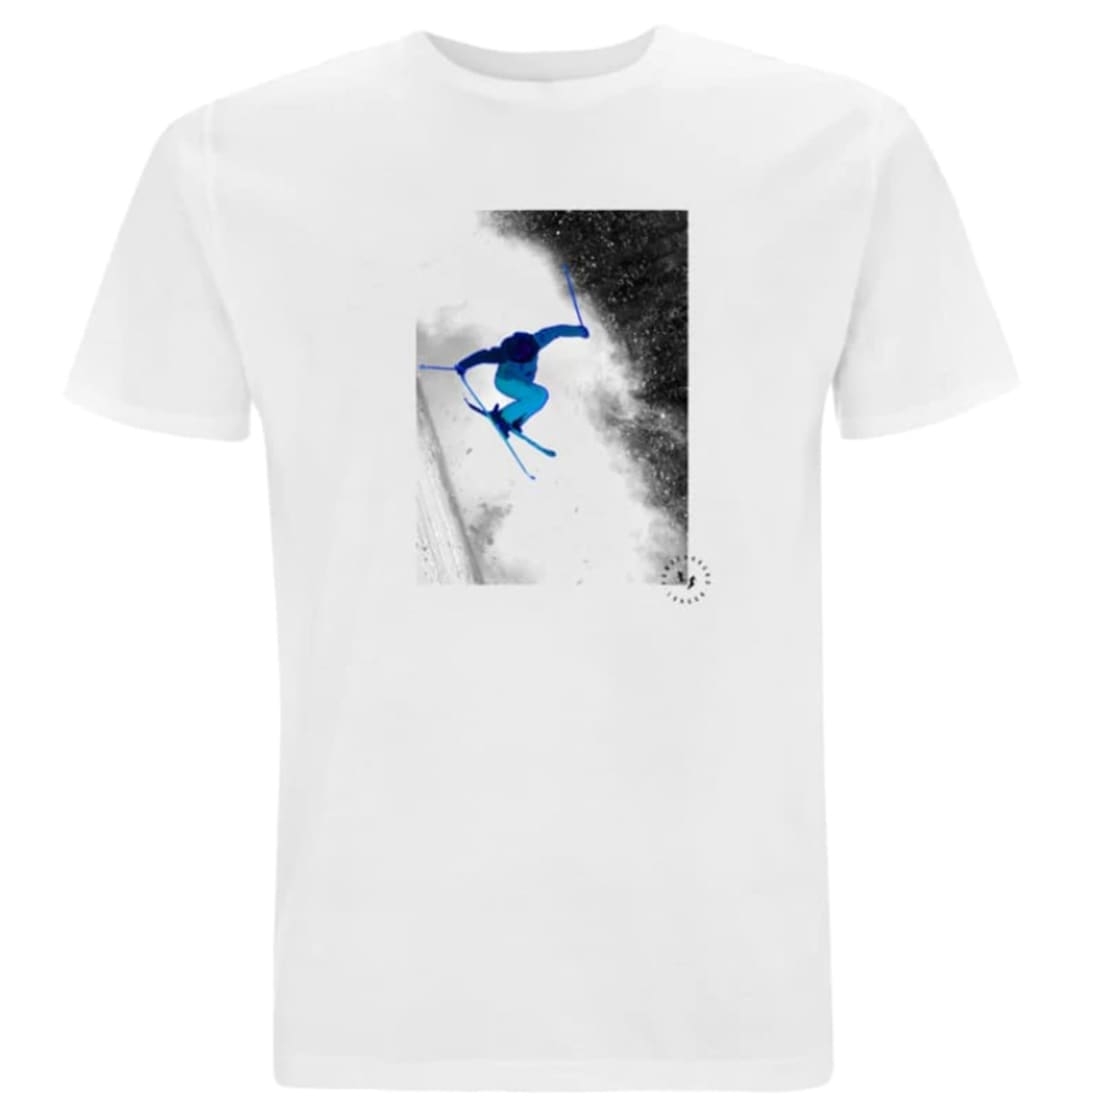 Powderhound Unisex T Shirt, Blue Skier, CHILDREN 5/6 YRS – Powderhound